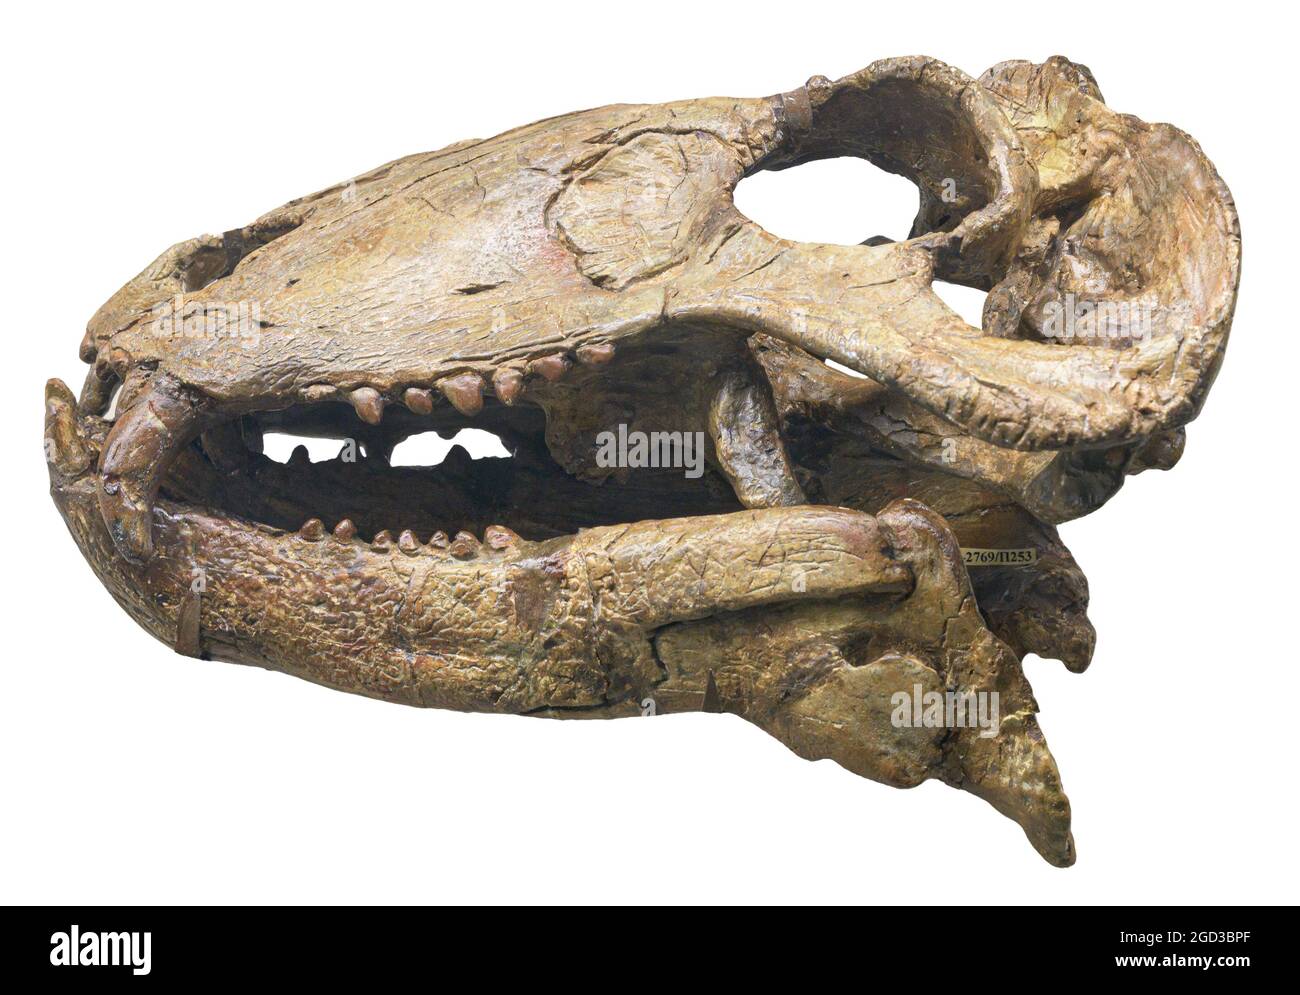 Syodon - Gattung der dinocephalischen Therapeuten. Mittlere Permianperiode der Paläozoikum-Ära Stockfoto